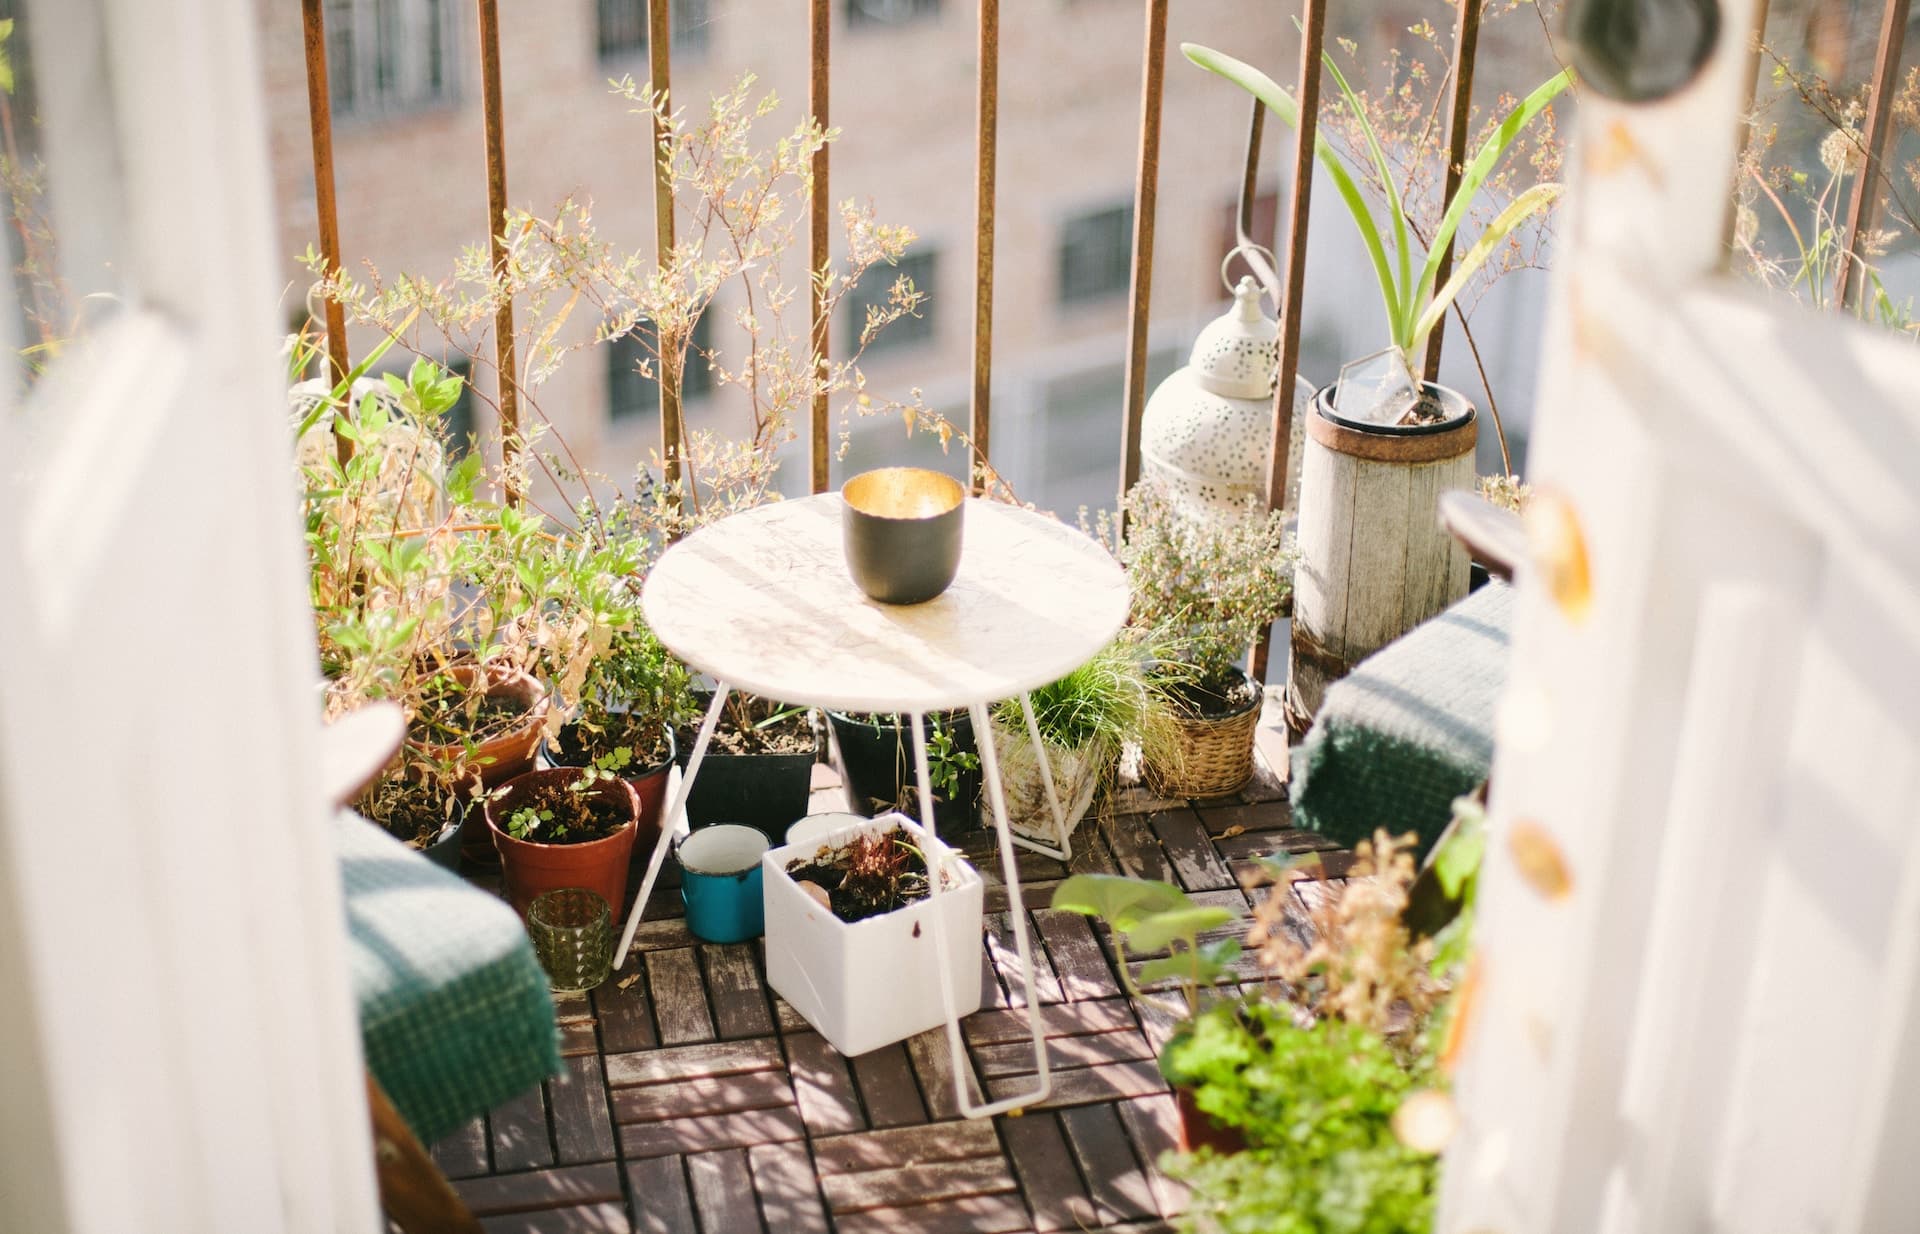 Créez votre propre havre de paix en aménageant votre balcon cosy 